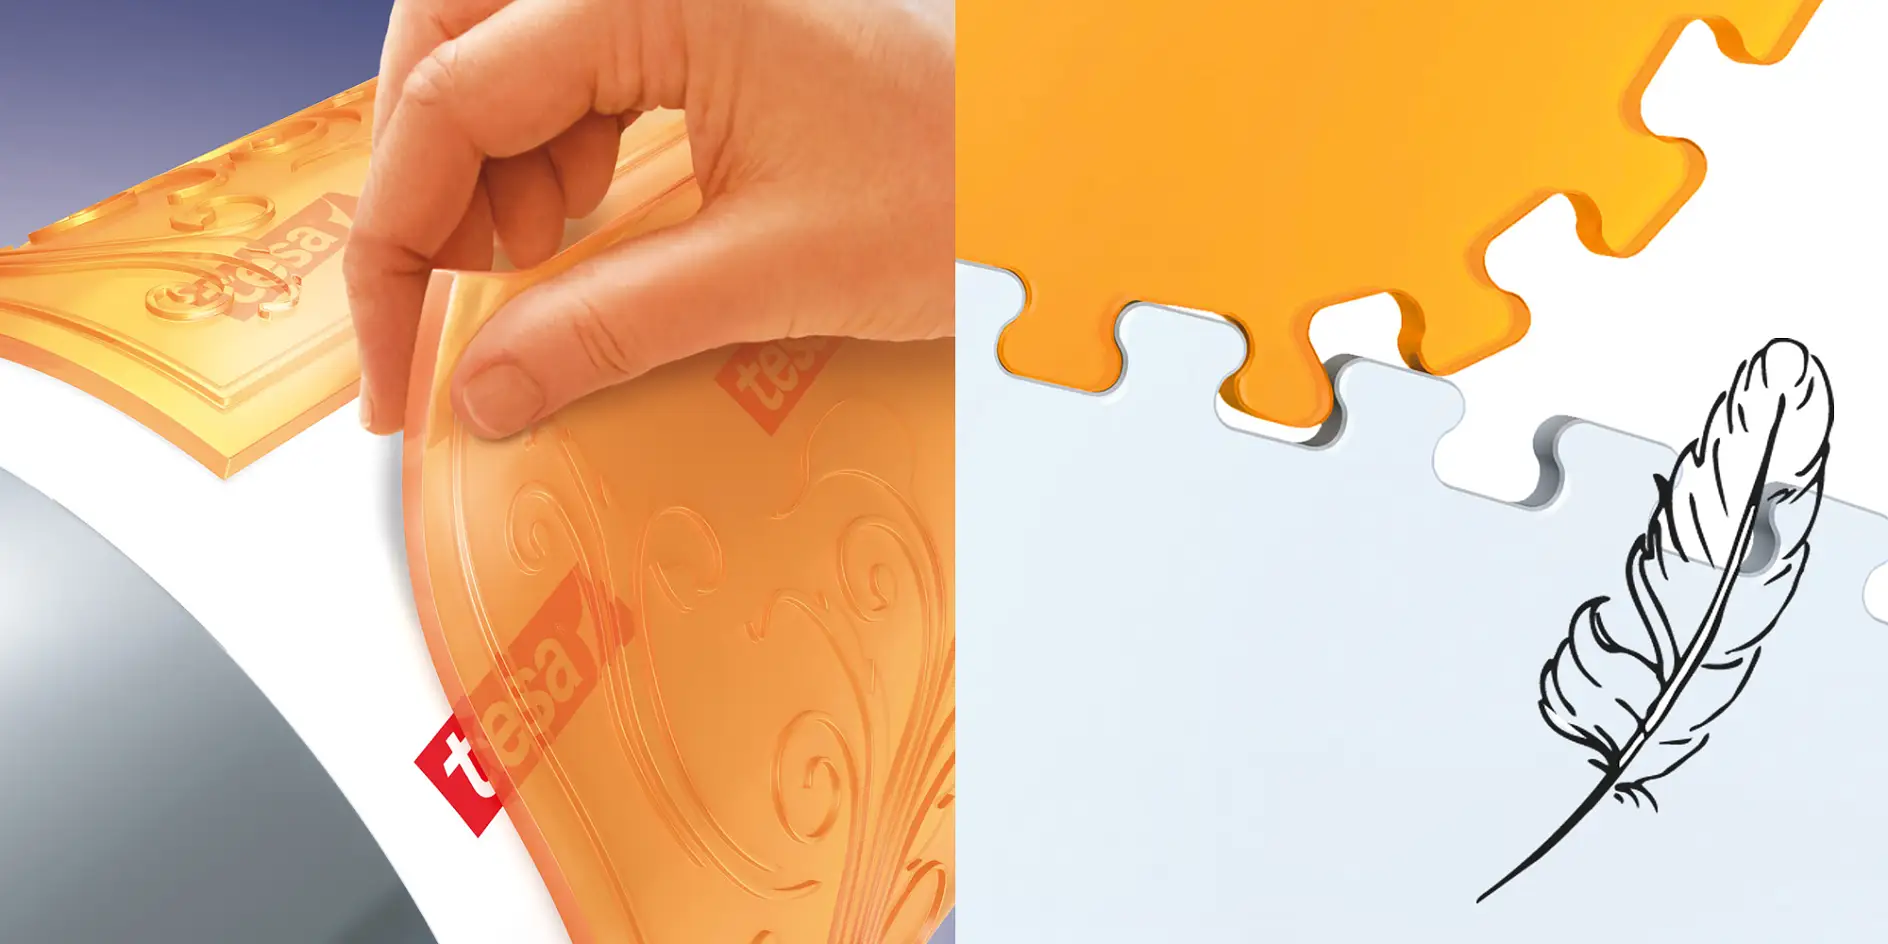 El adhesivo Snap-on permite desmontar fácilmente la plancha y la cinta